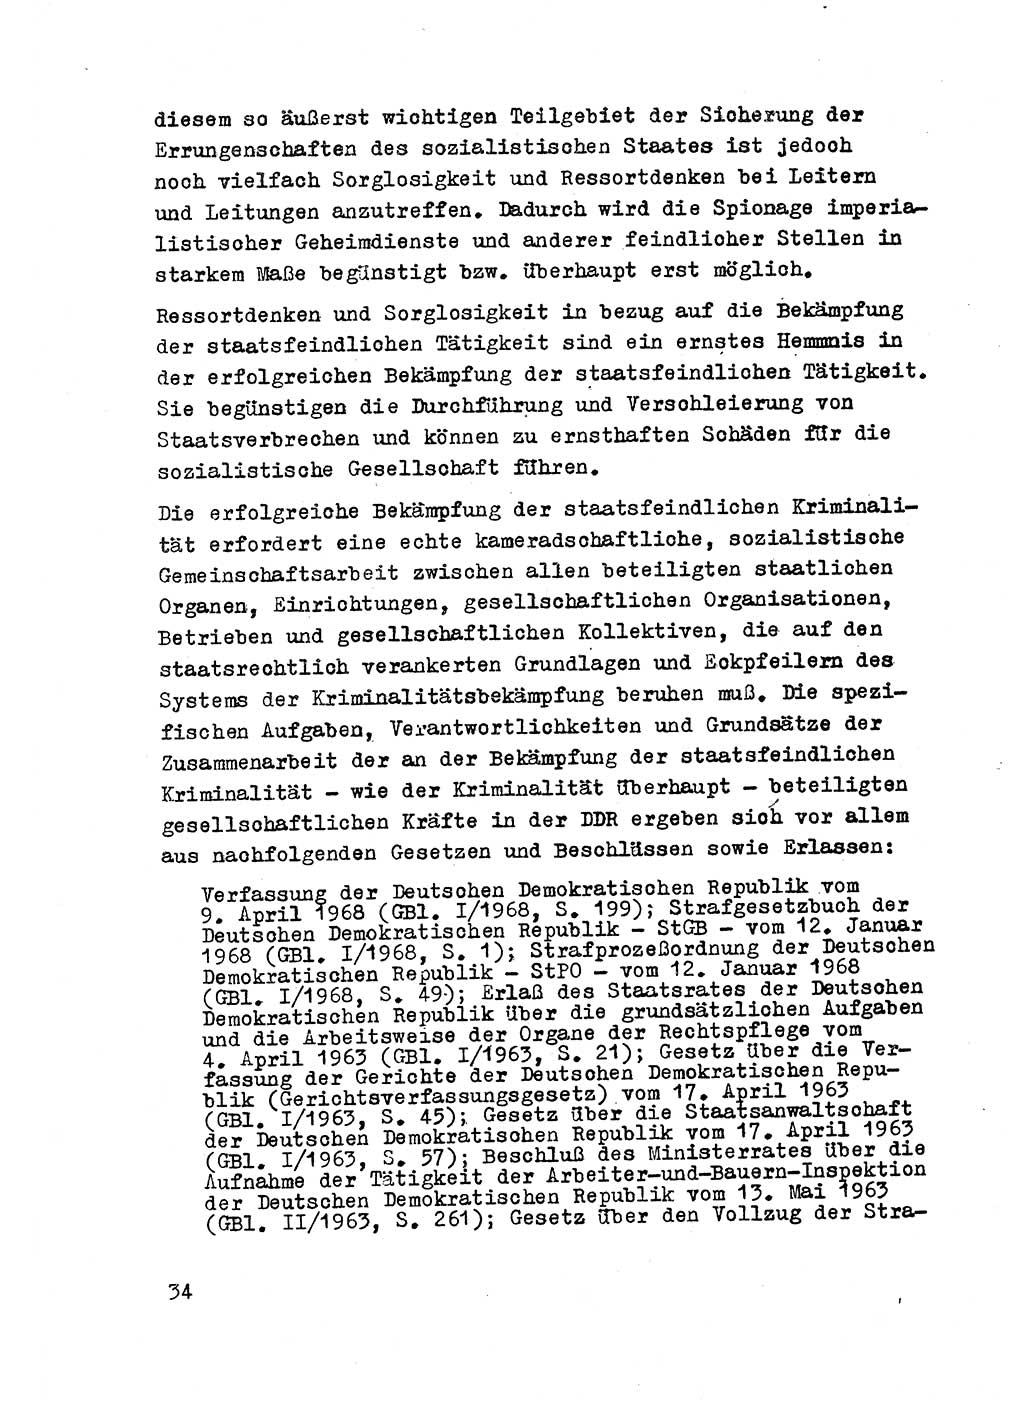 Strafrecht der DDR (Deutsche Demokratische Republik), Besonderer Teil, Lehrmaterial, Heft 2 1969, Seite 34 (Strafr. DDR BT Lehrmat. H. 2 1969, S. 34)